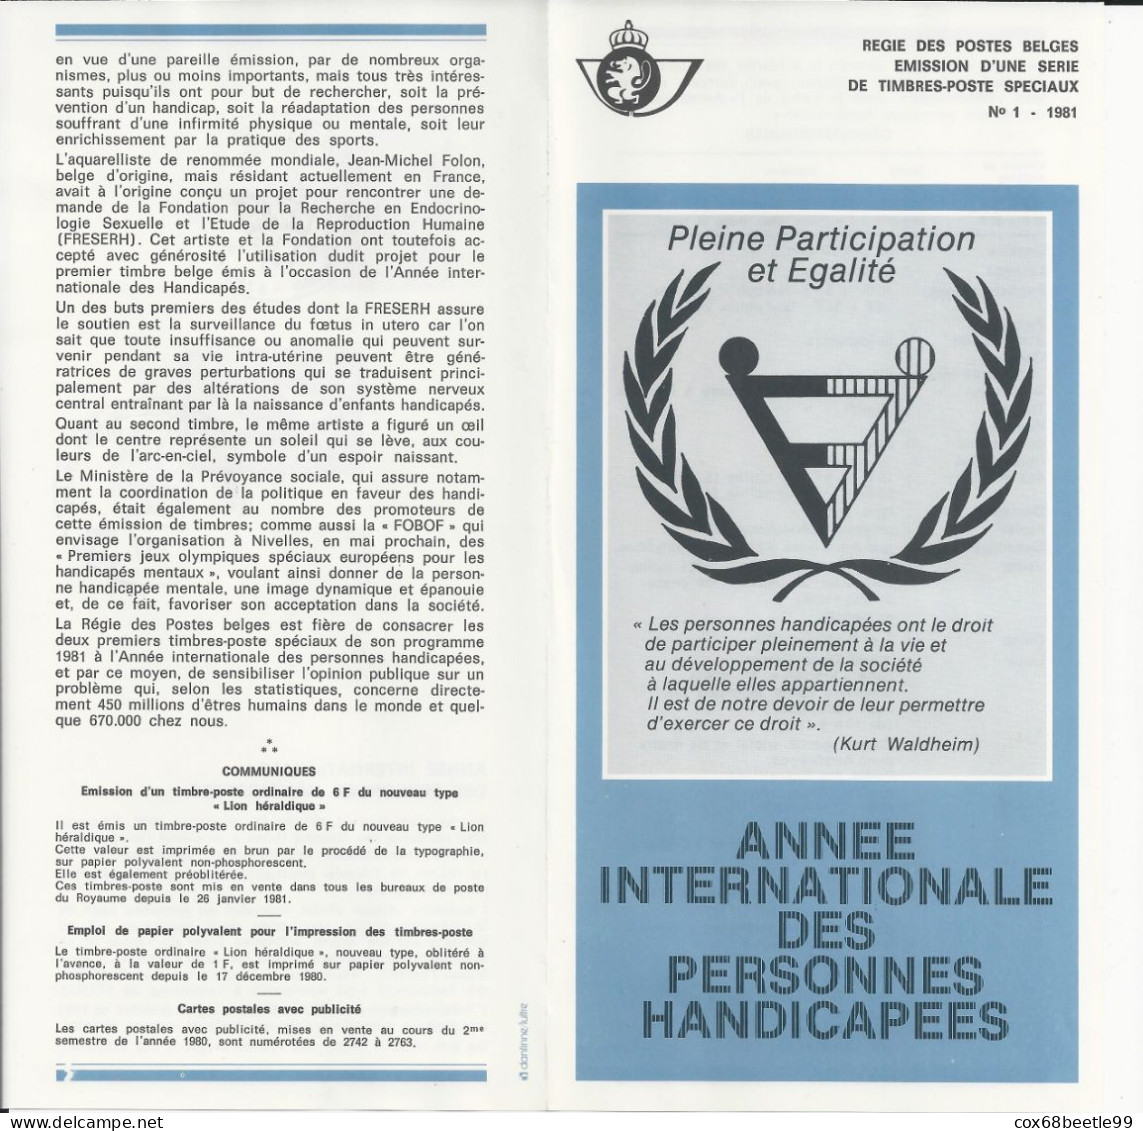 FOLON Belgique Feuillet De La Poste 1981-1 FDC Cob 1999/2000 07-02-1981 LIEGE - Post Office Leaflets